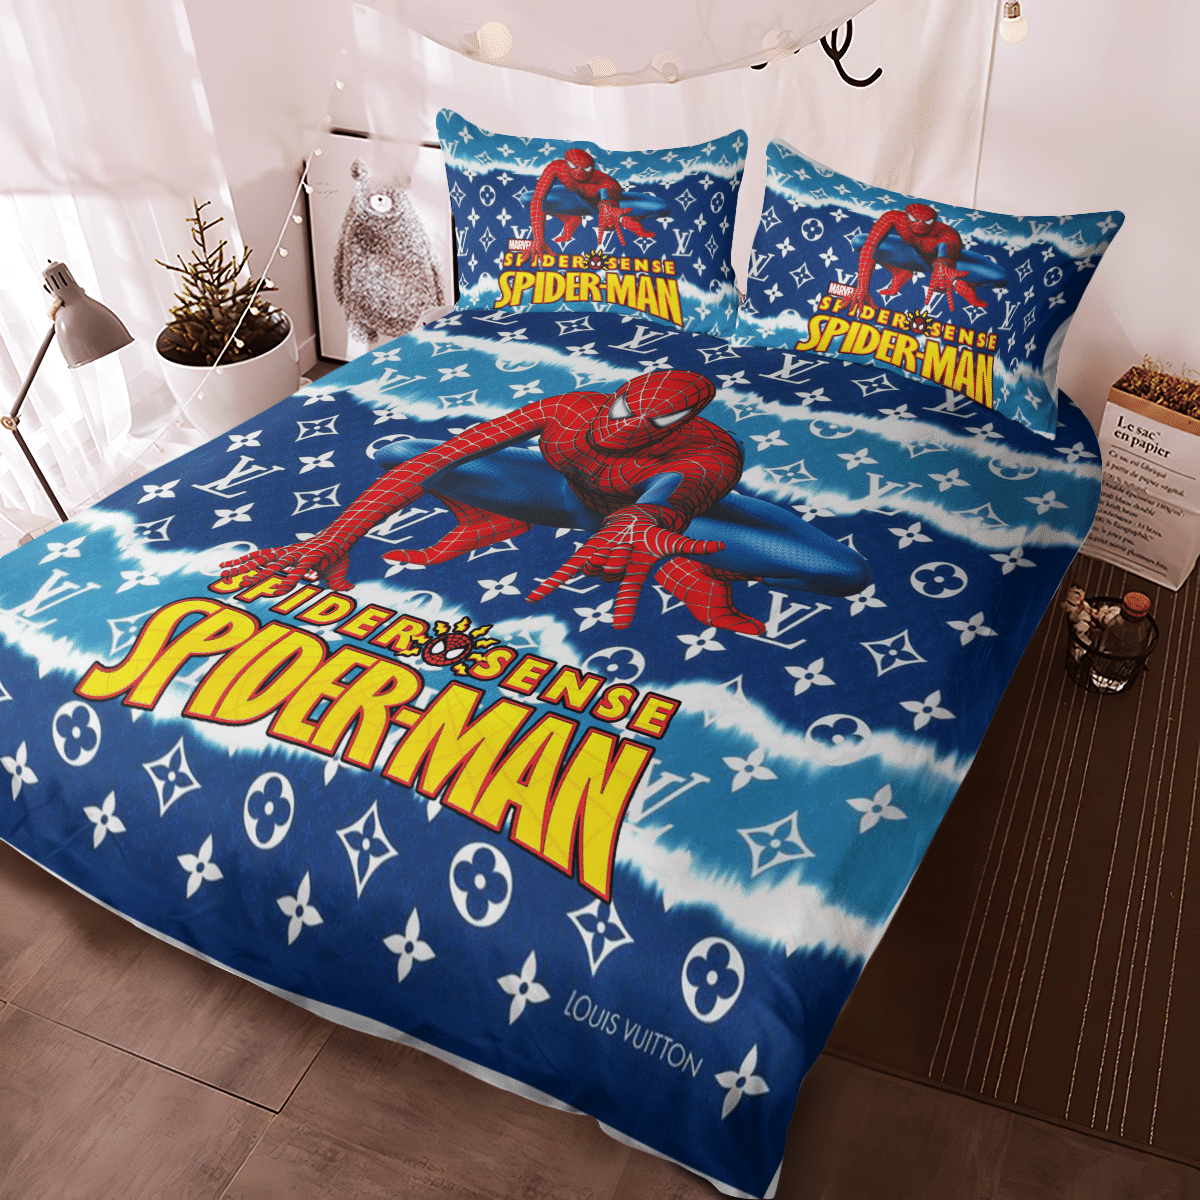 Spider Man Louis Vuitton bedding set 2